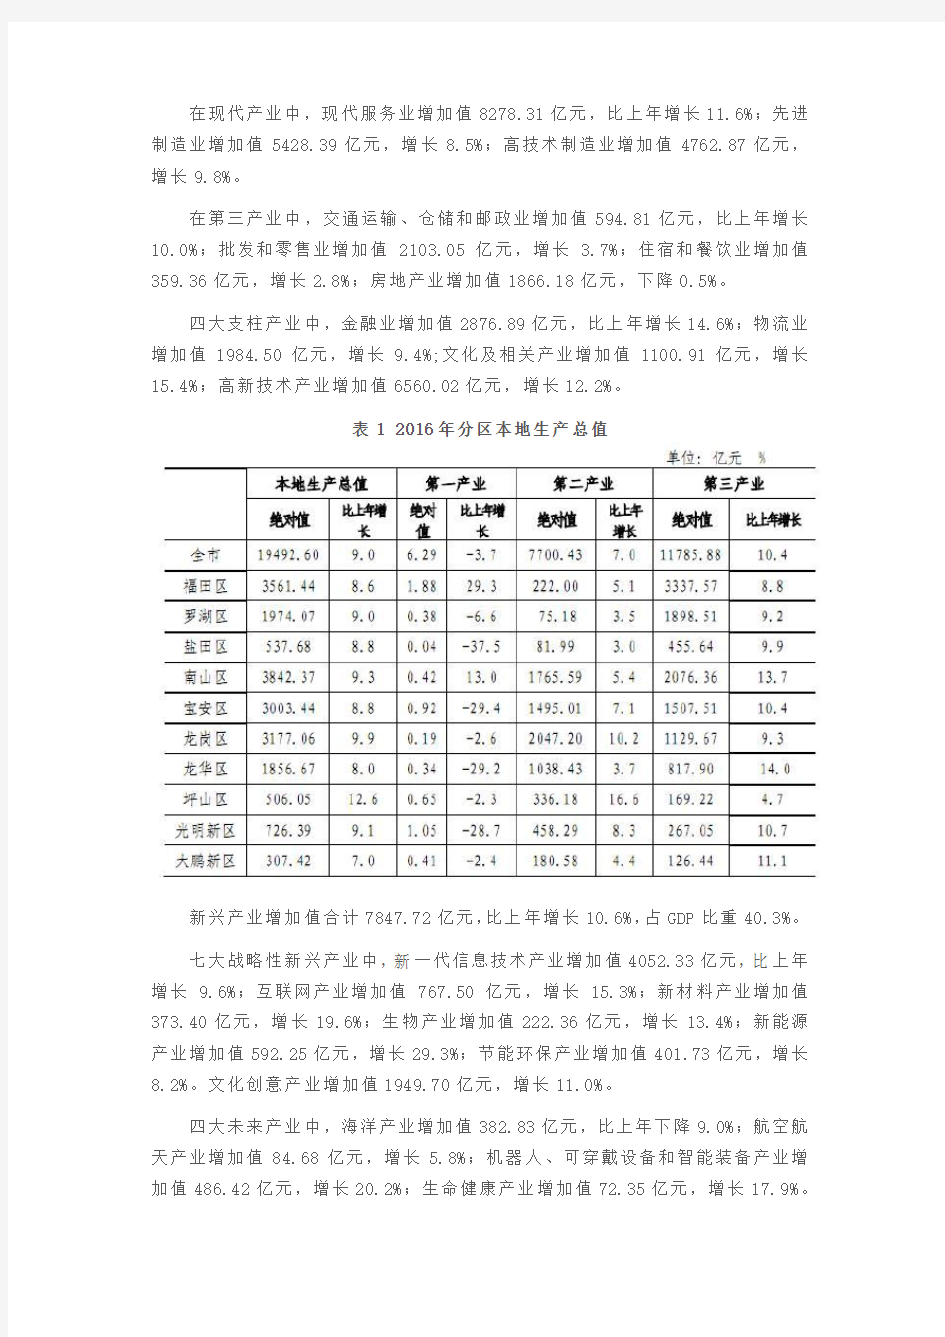 2016深圳市国民经济和社会发展统计公报